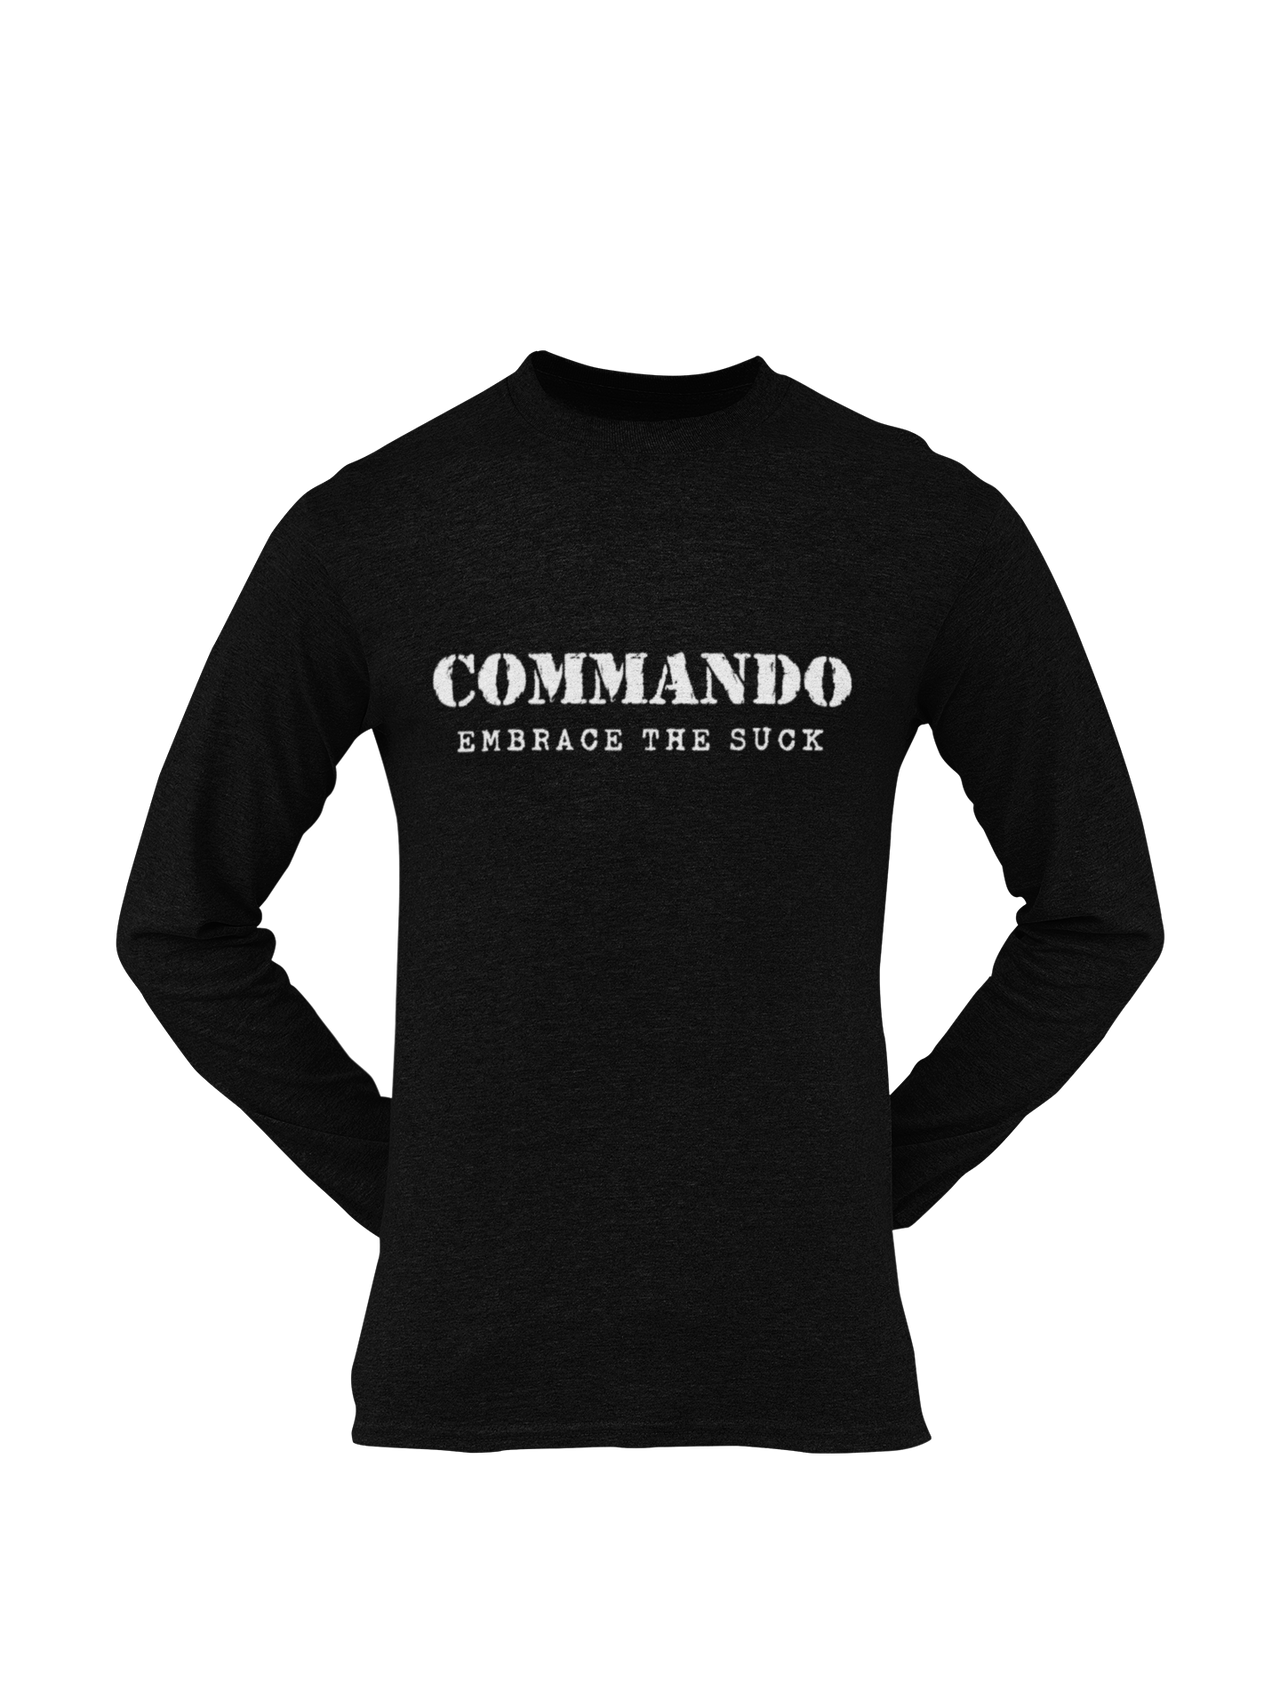 Commando T-shirt - Commando - Embrace The Suck (Men)